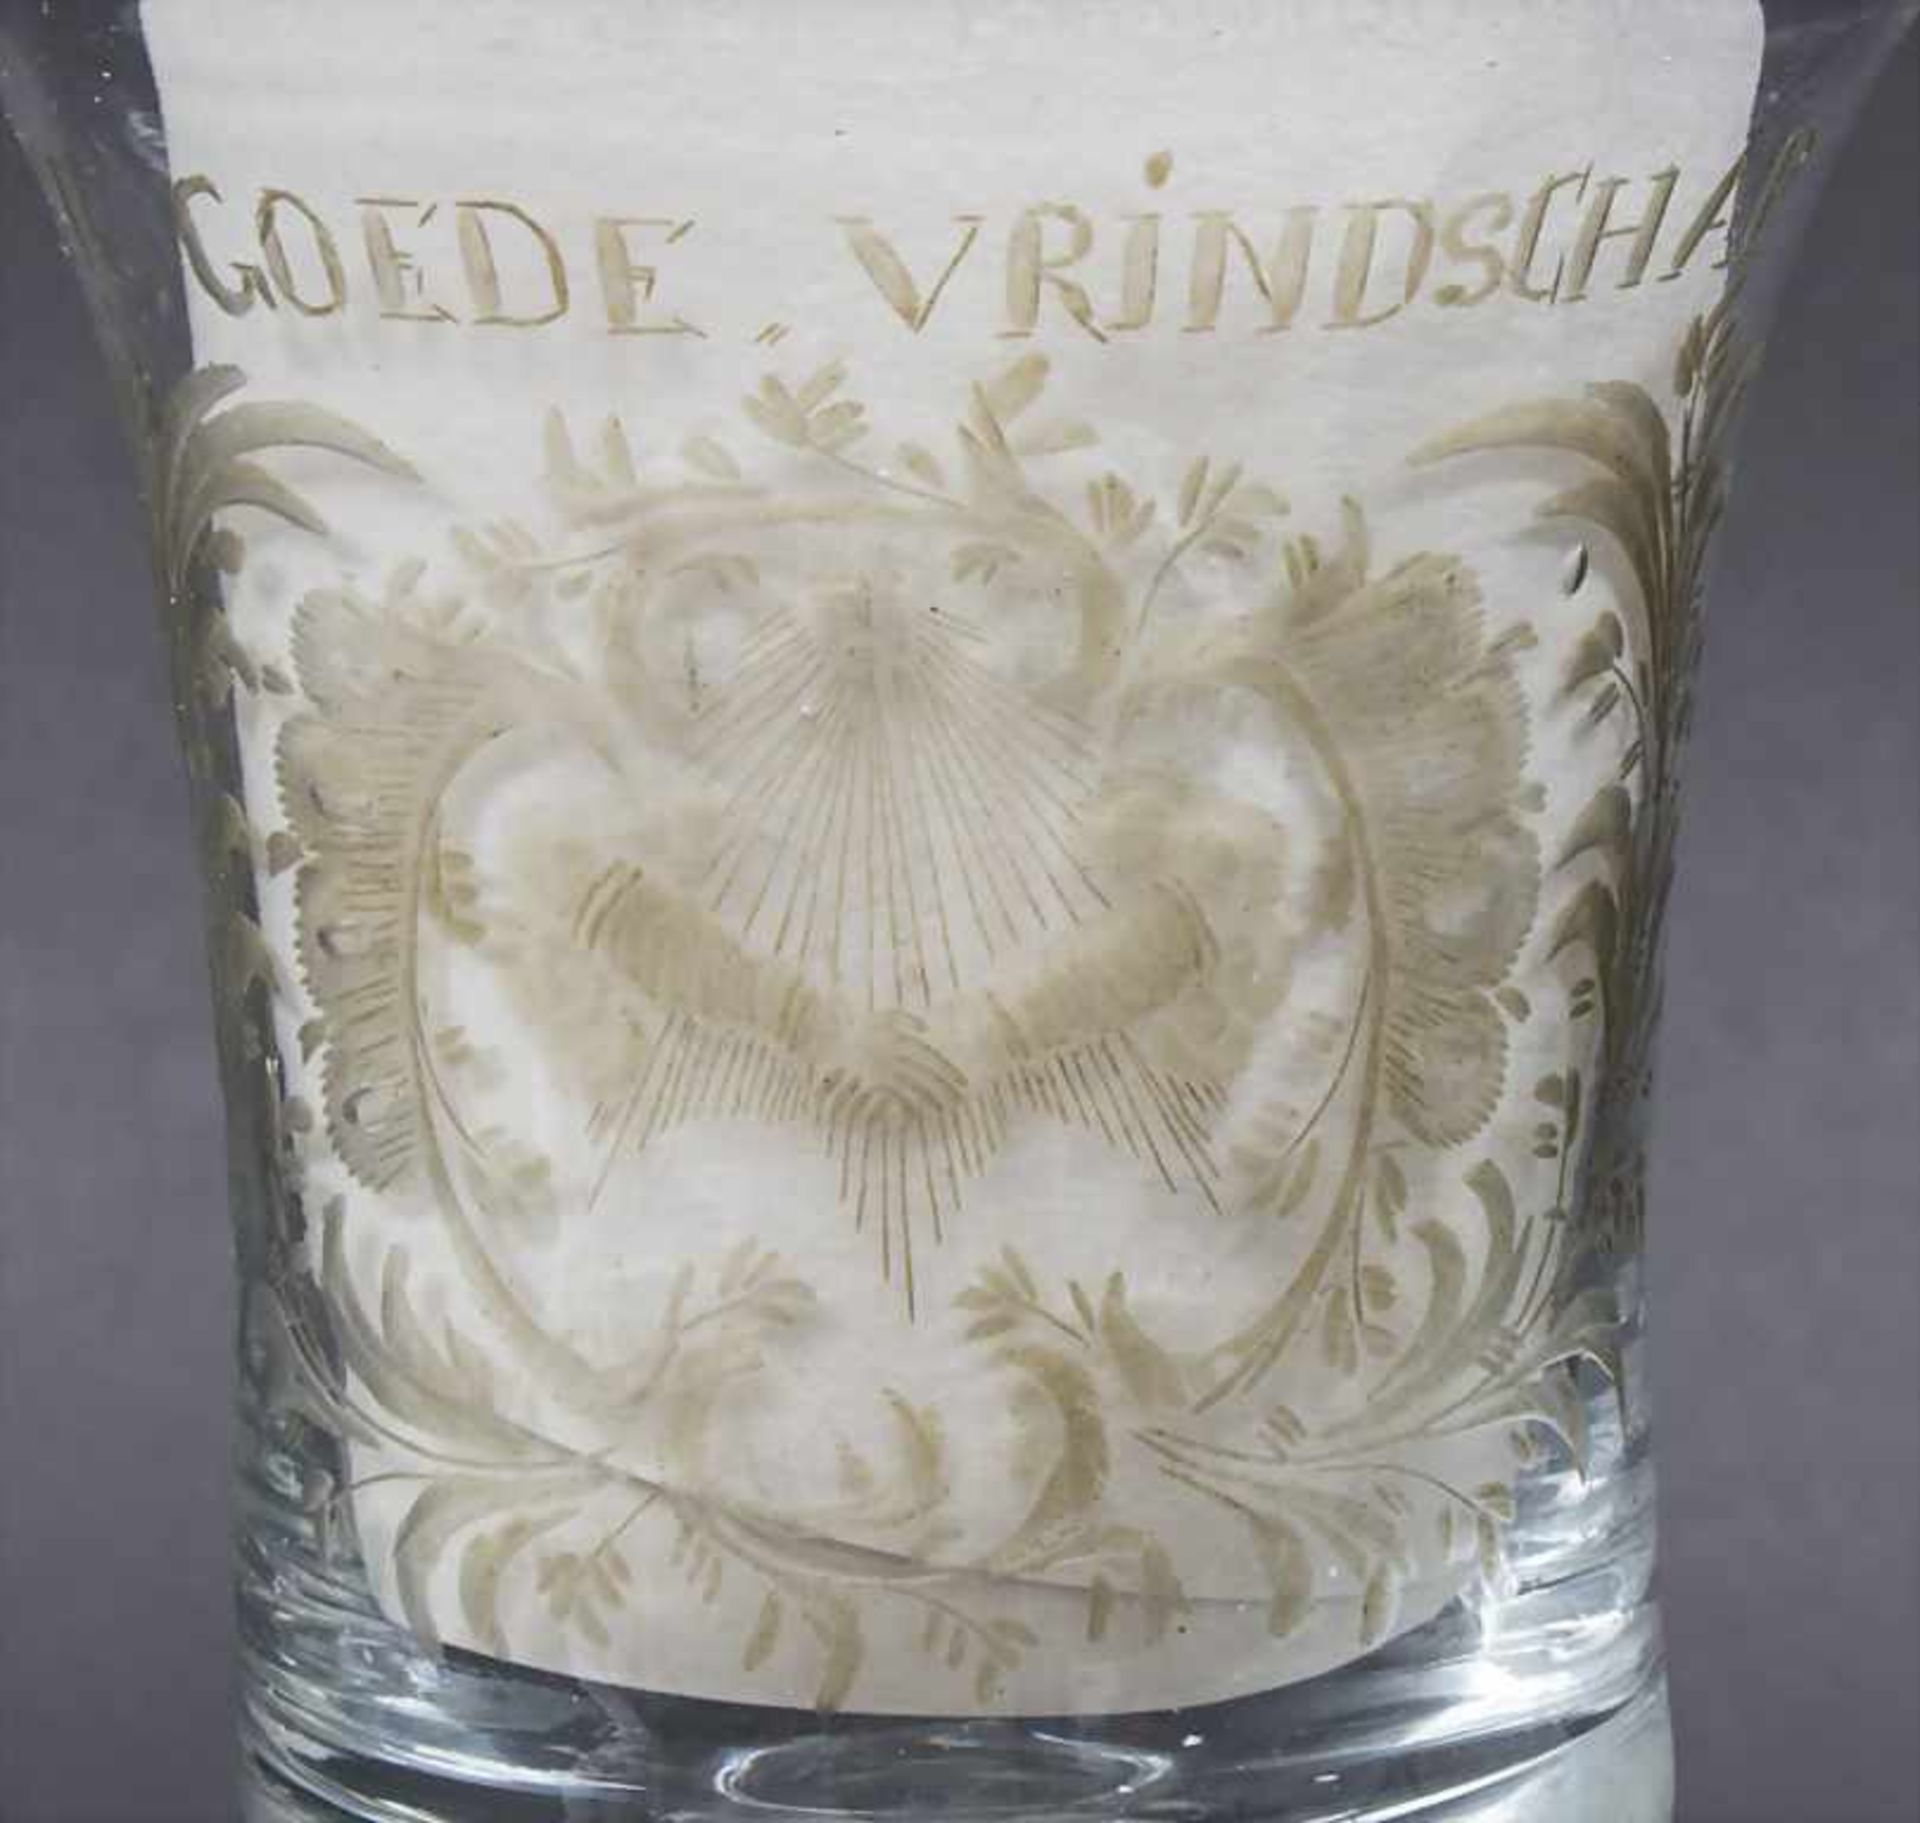 Freundschaftsglas / Noppenglas / Weinpokal / A friendship glass cup, 'DE GOEDE VRiNDSCHAP', - Bild 2 aus 2